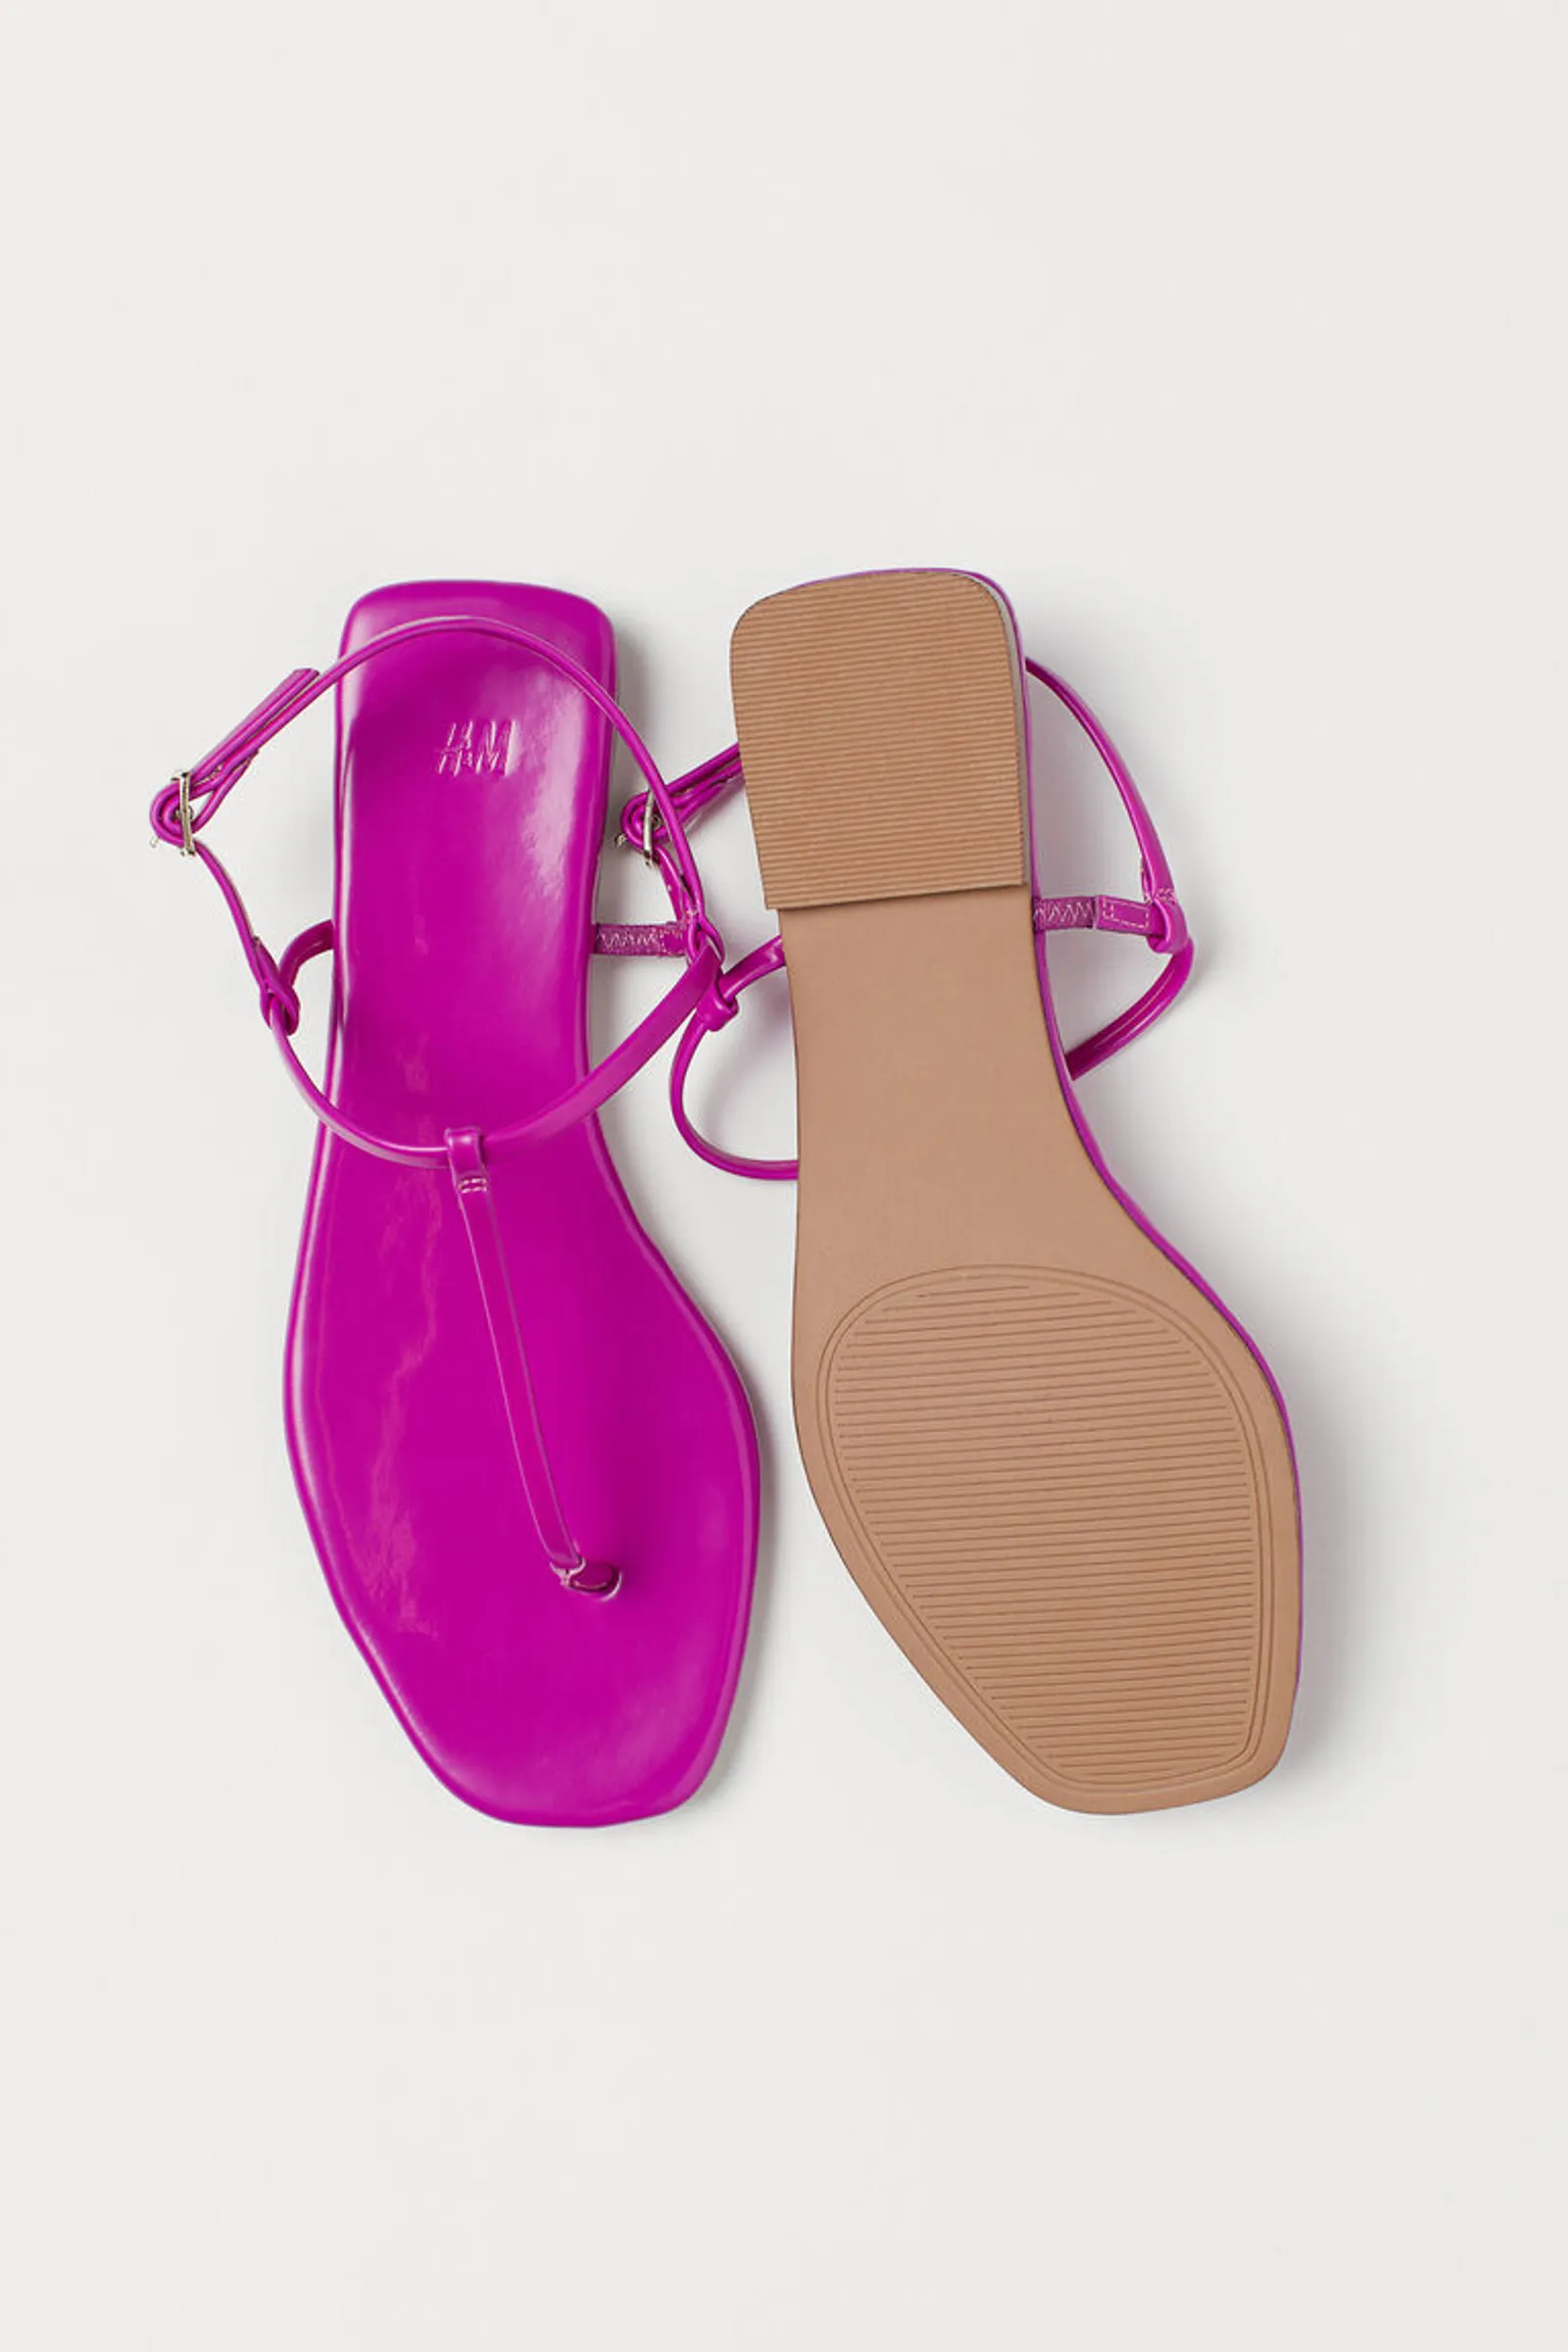 #PopbelaOOTD: Sandal Warna-warni untuk Kamu yang Suka Tampil Feminin